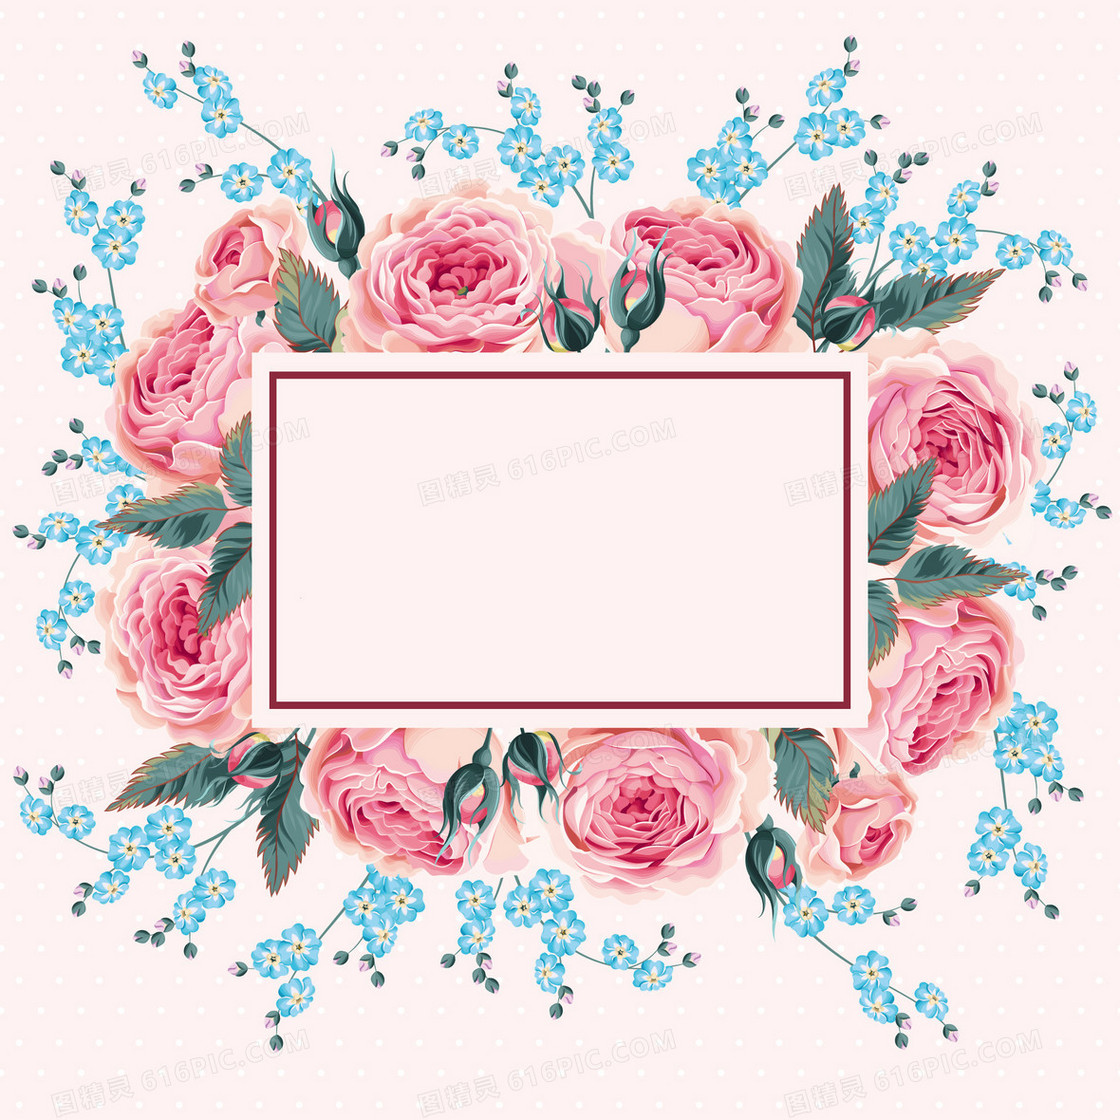 水彩花卉边框背景素材